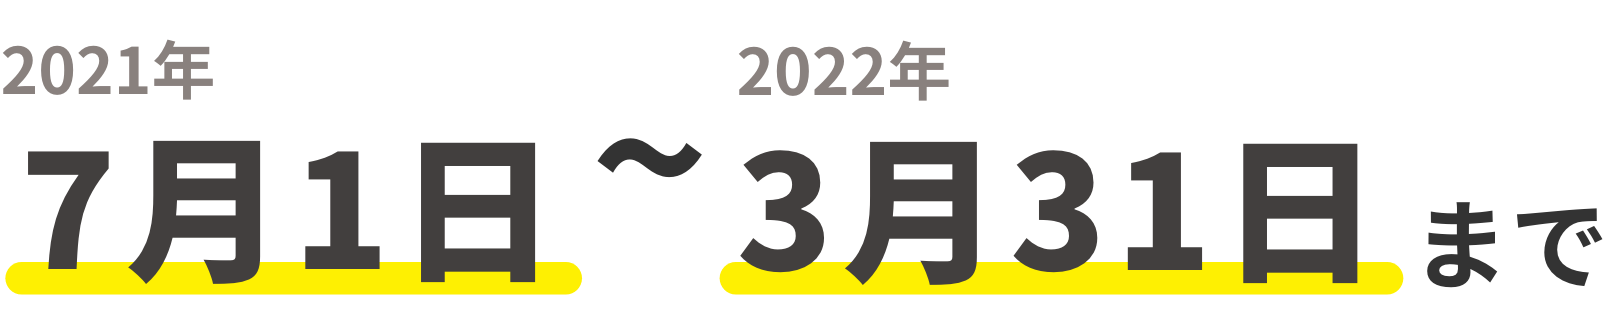 2021年7月1日 ~ 2022年3月31日まで 